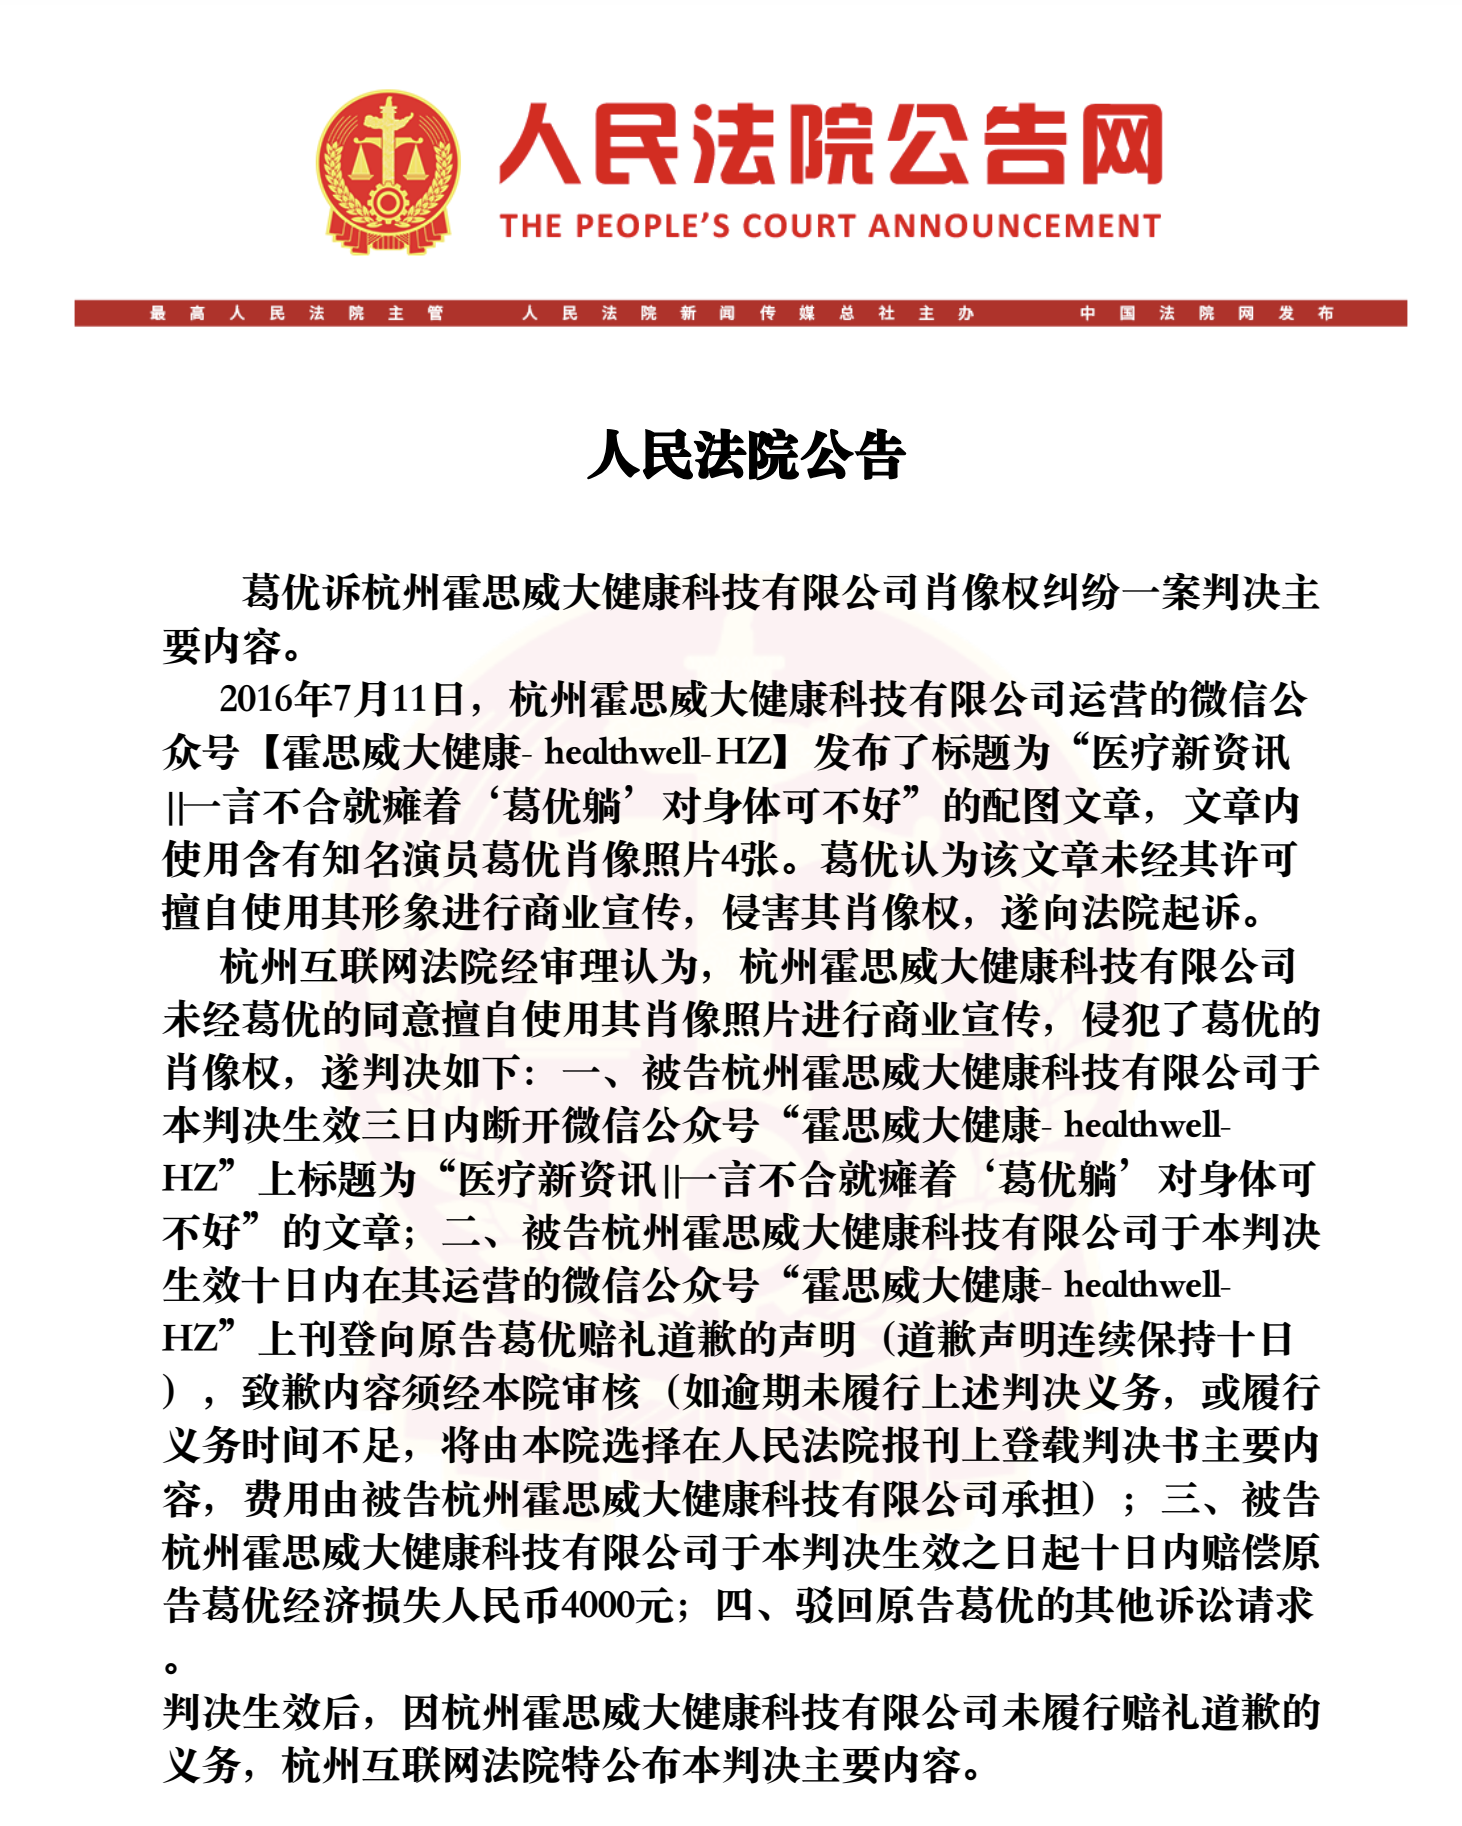 配图“葛优躺”侵犯肖像权，杭州一企业被判赔偿4000元并公开道歉